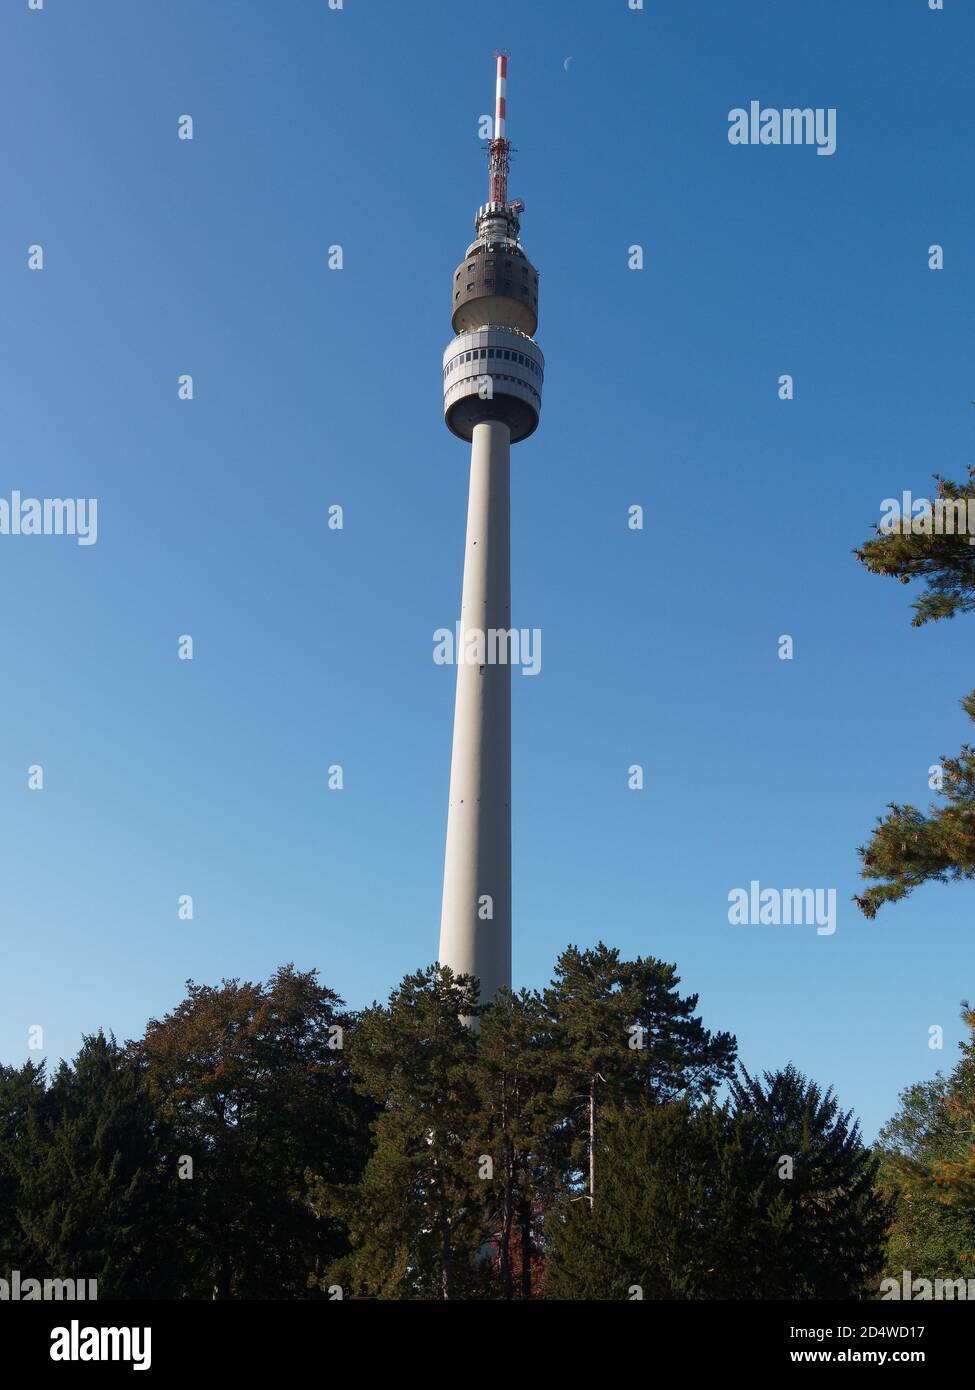 Florianturm Fernsehturm im Westfalenpark hinter Bäumen, in Dortmund, Nordrhein-Westfalen, Deutschland Westfälische Park, Landschaft, Ansicht von unten Stock Photo